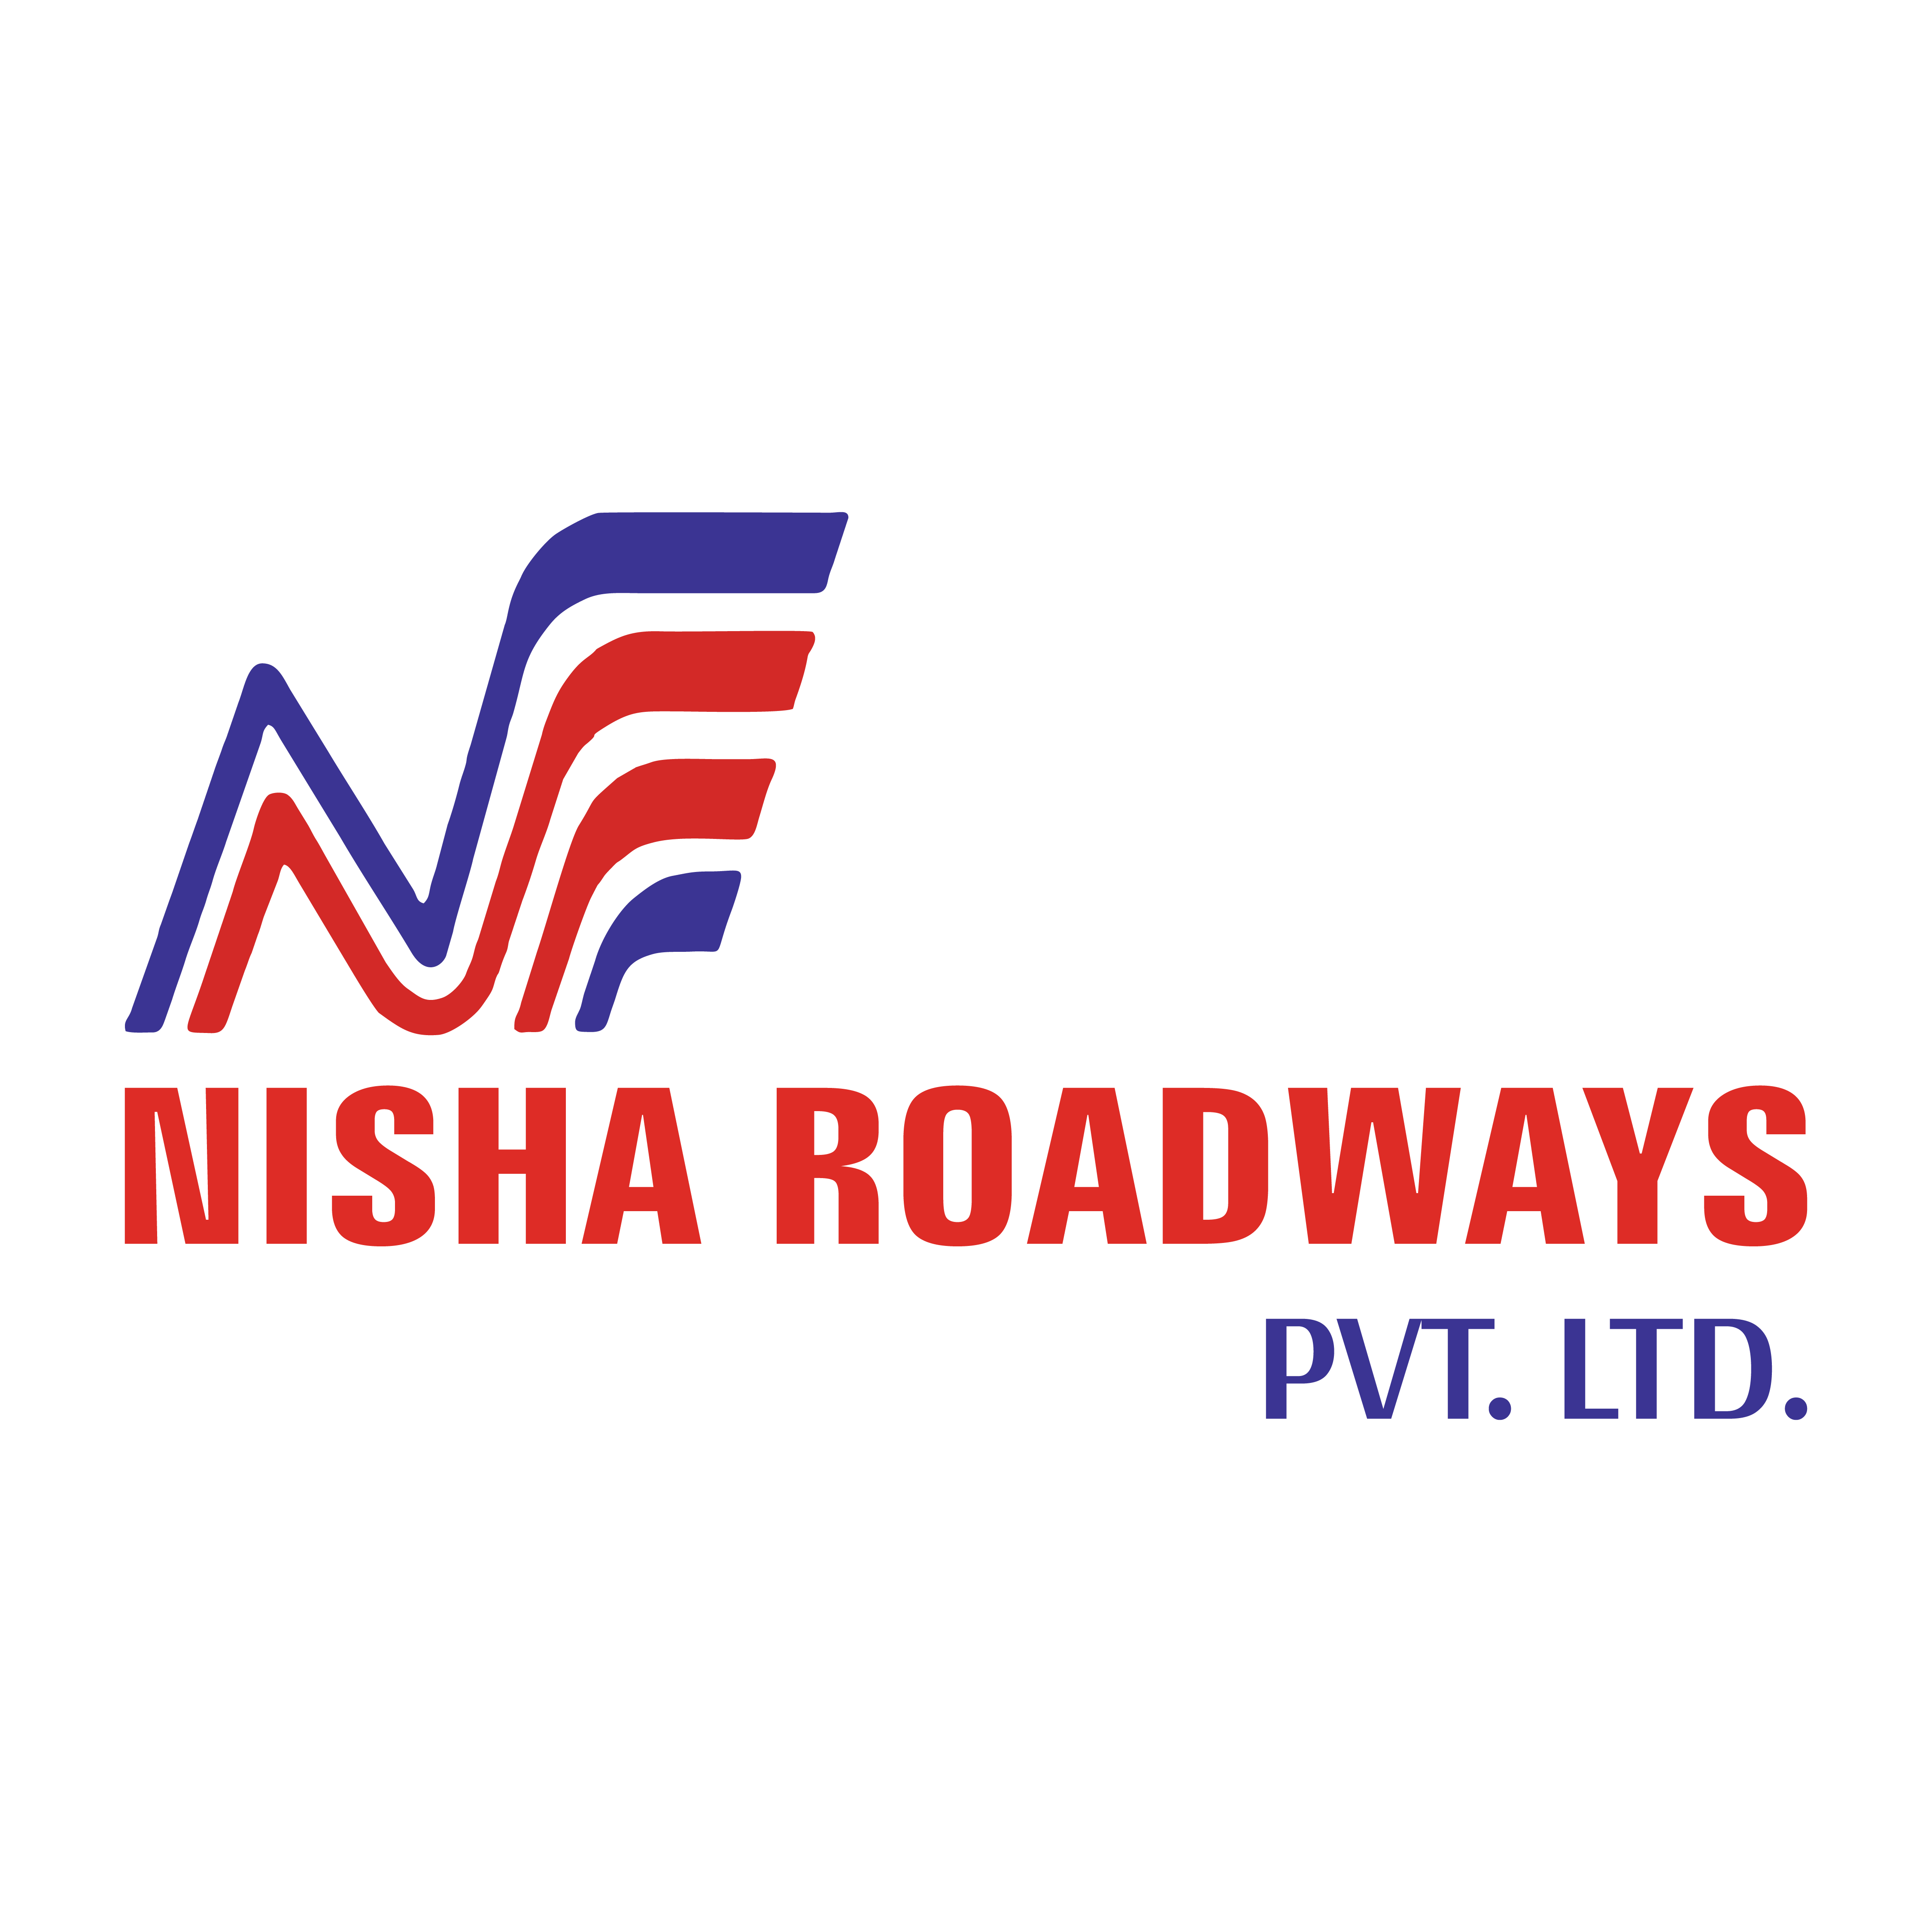 NISHA ROADWAYS PVT. LTD